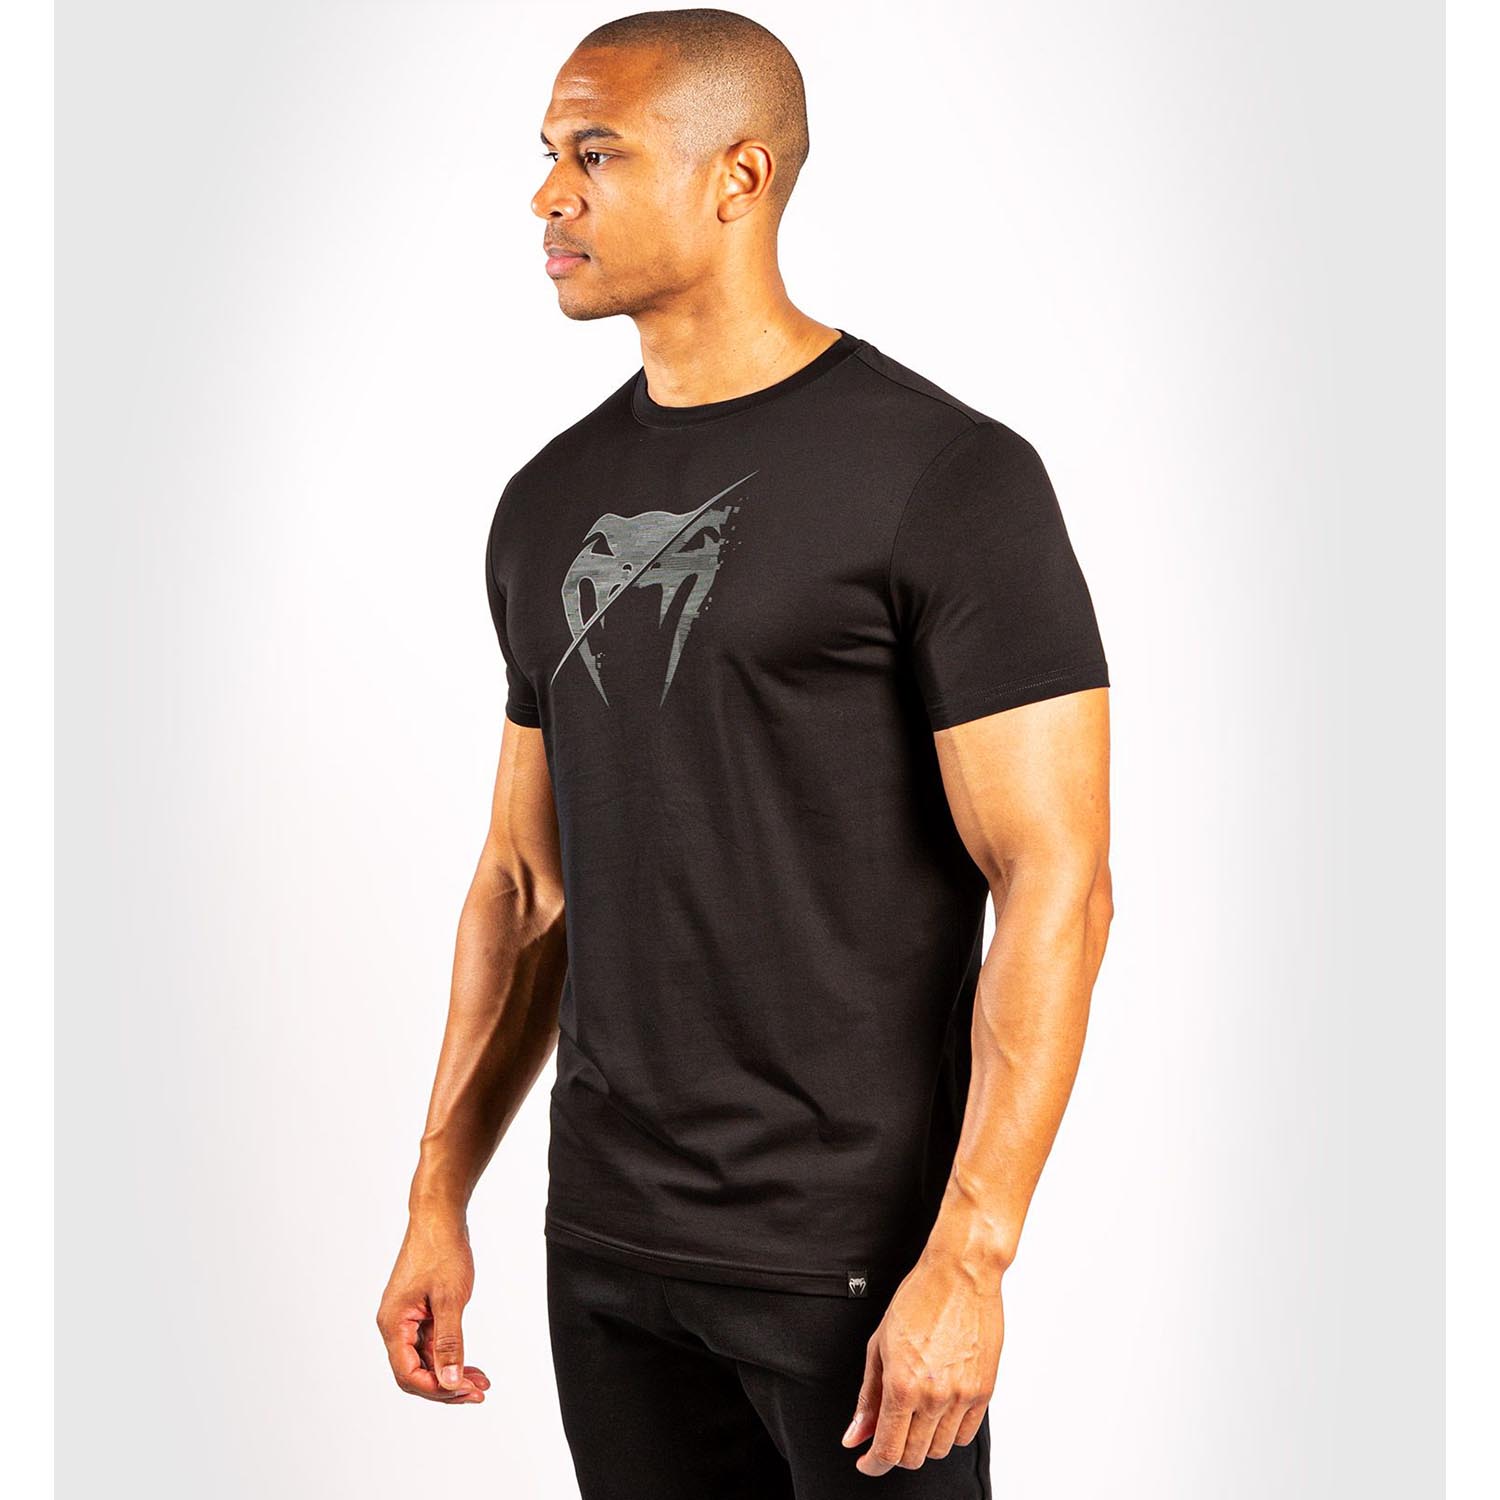 VENUM T-Shirt, Interference 3.0, schwarz, M